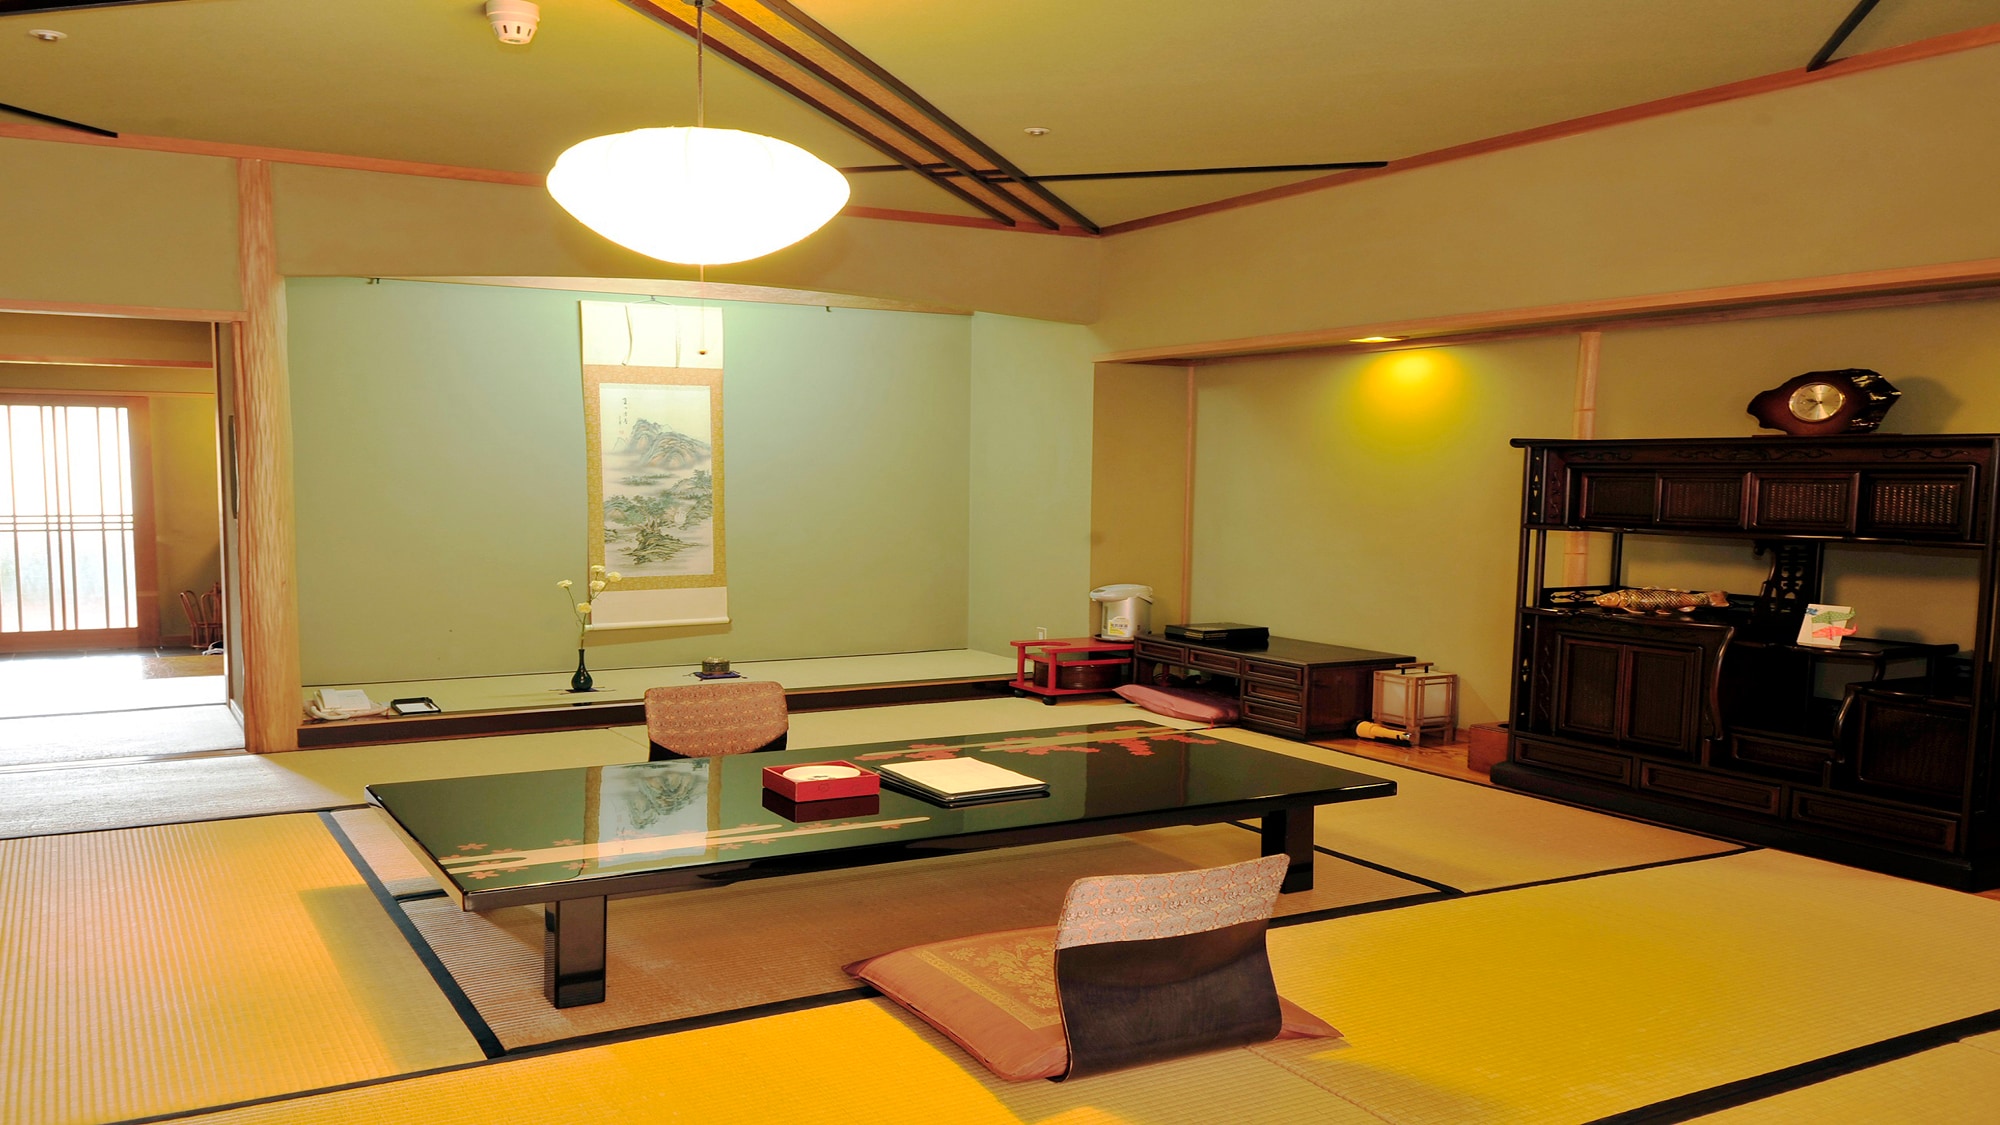 ◆日式房間12.5榻榻米+寬邊